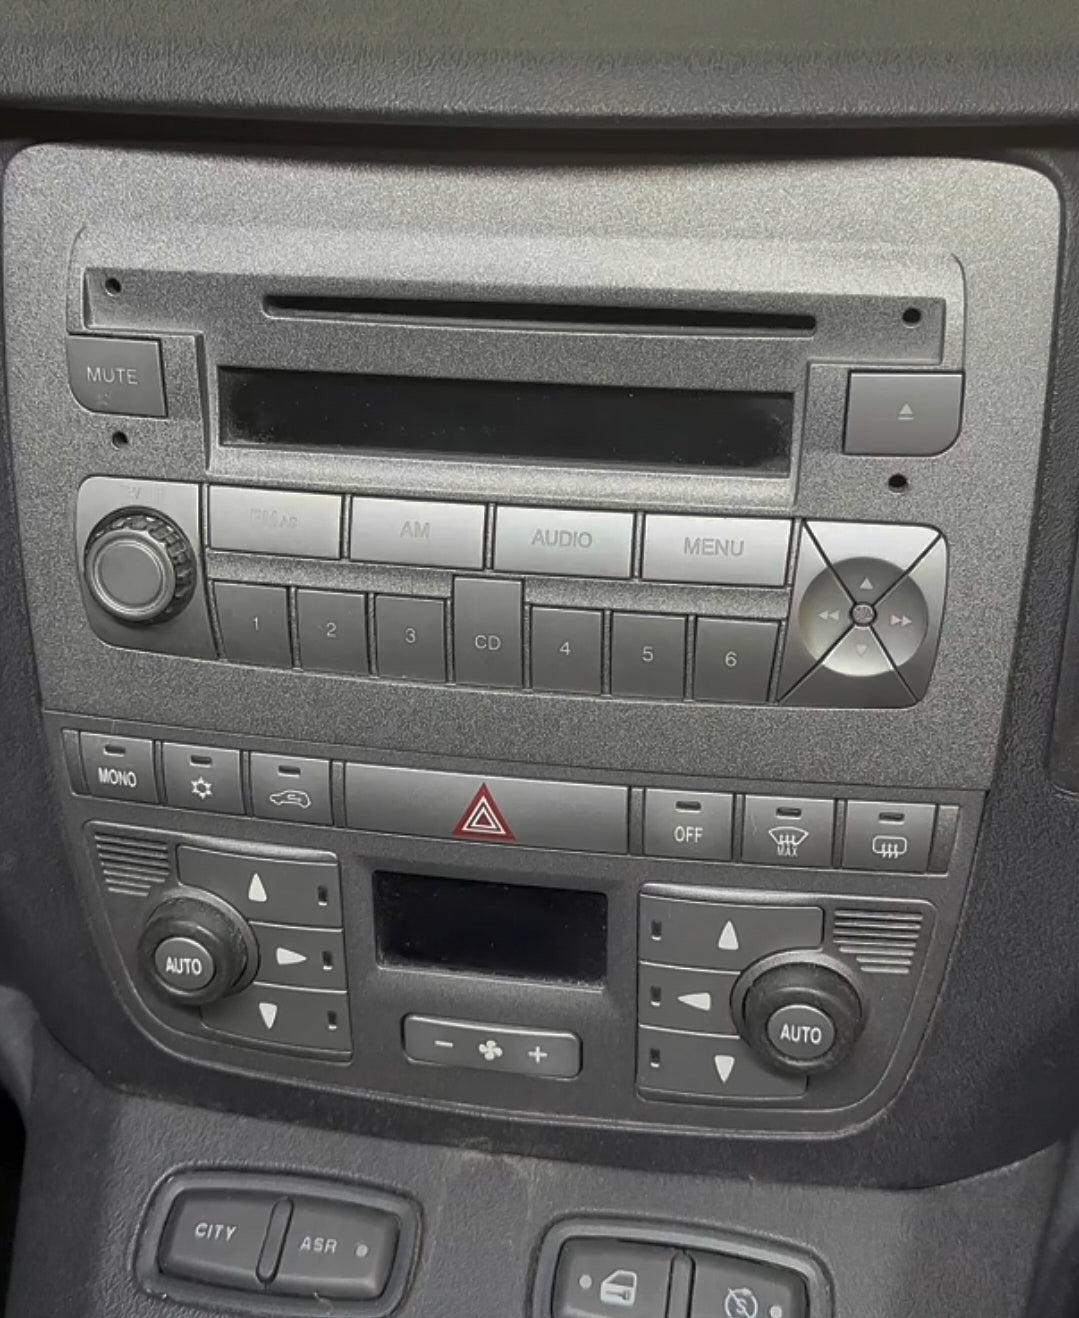 Autoradio per Fiat idea/Lancia Musa [2003-2008] - 1Din 7"Pollici, Android, Motorizzato, GPS, WiFi, Radio, Bluetooth, FM, SWC, PlayStore